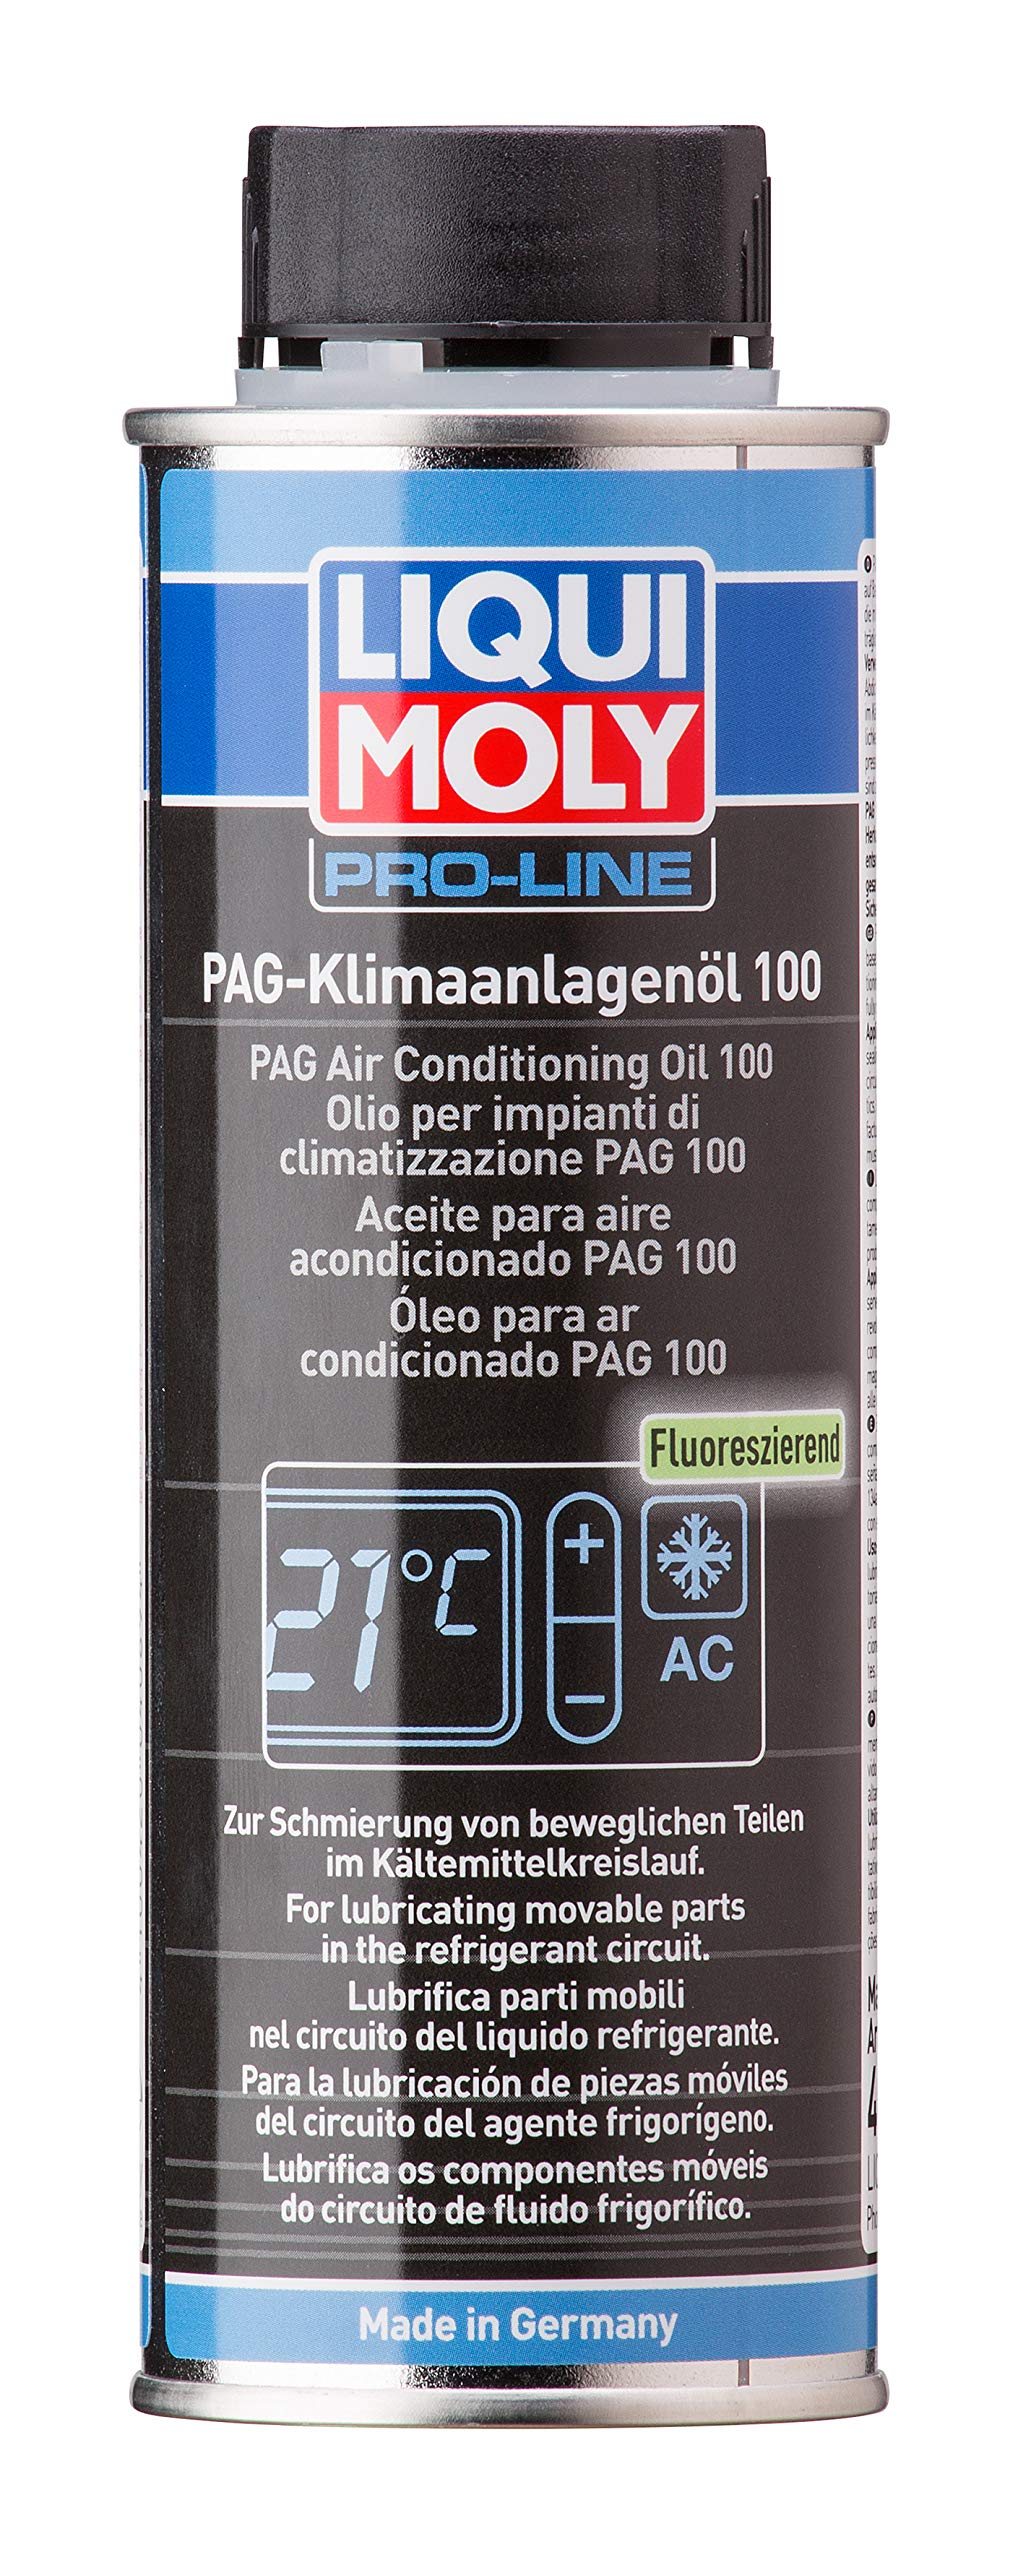 LIQUI MOLY PAG Klimaanlagenöl 100 | 250 ml | Kompressorenöl | Art.-Nr.: 4089 von Liqui Moly